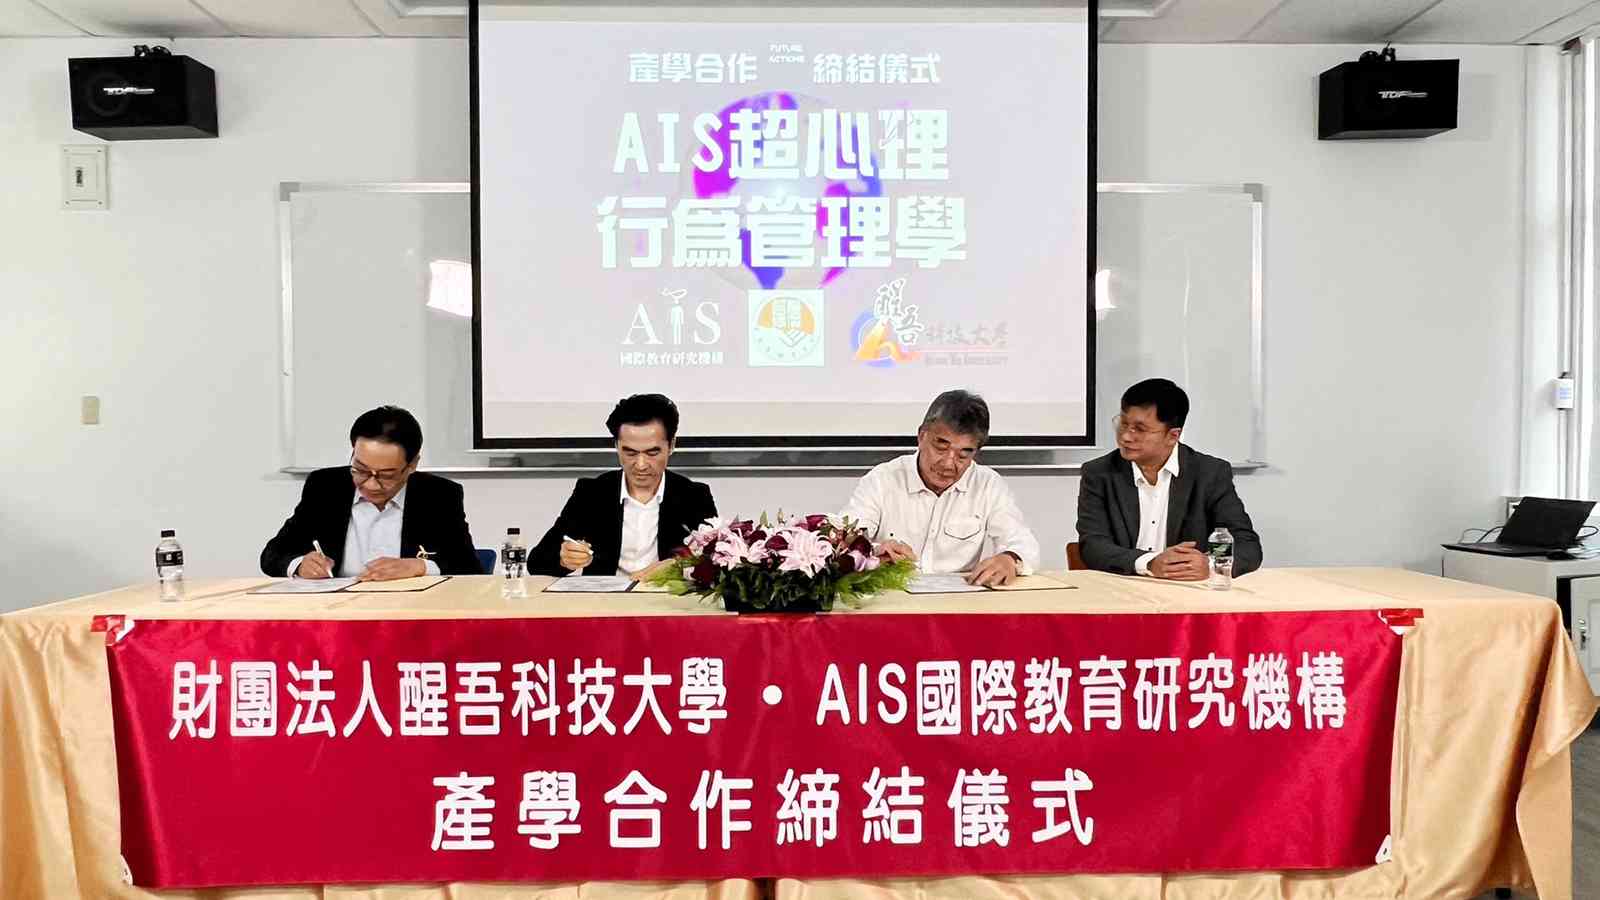 AIS締結醒吾科大 合作推動新世代高學力卓越領導藝術 人才計劃 - 早安台灣新聞 | Morning Taiwan News